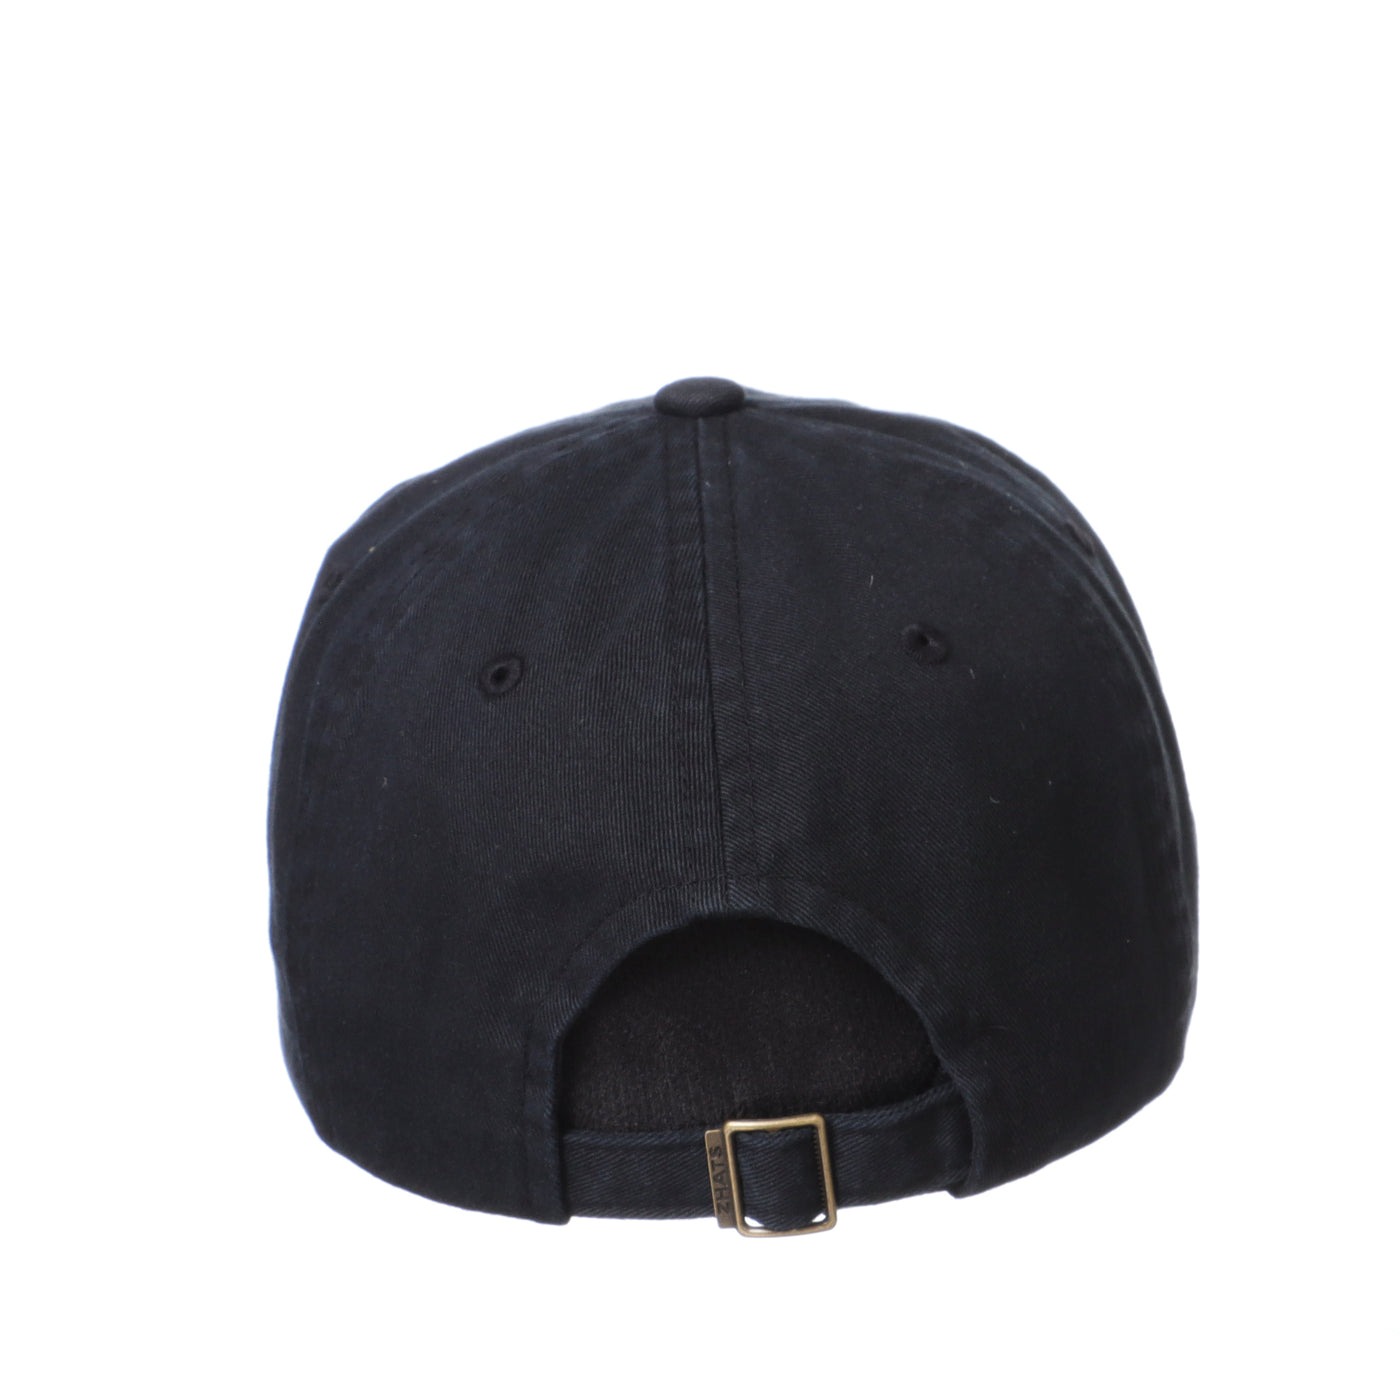 Back view of ASU black adjustable hat